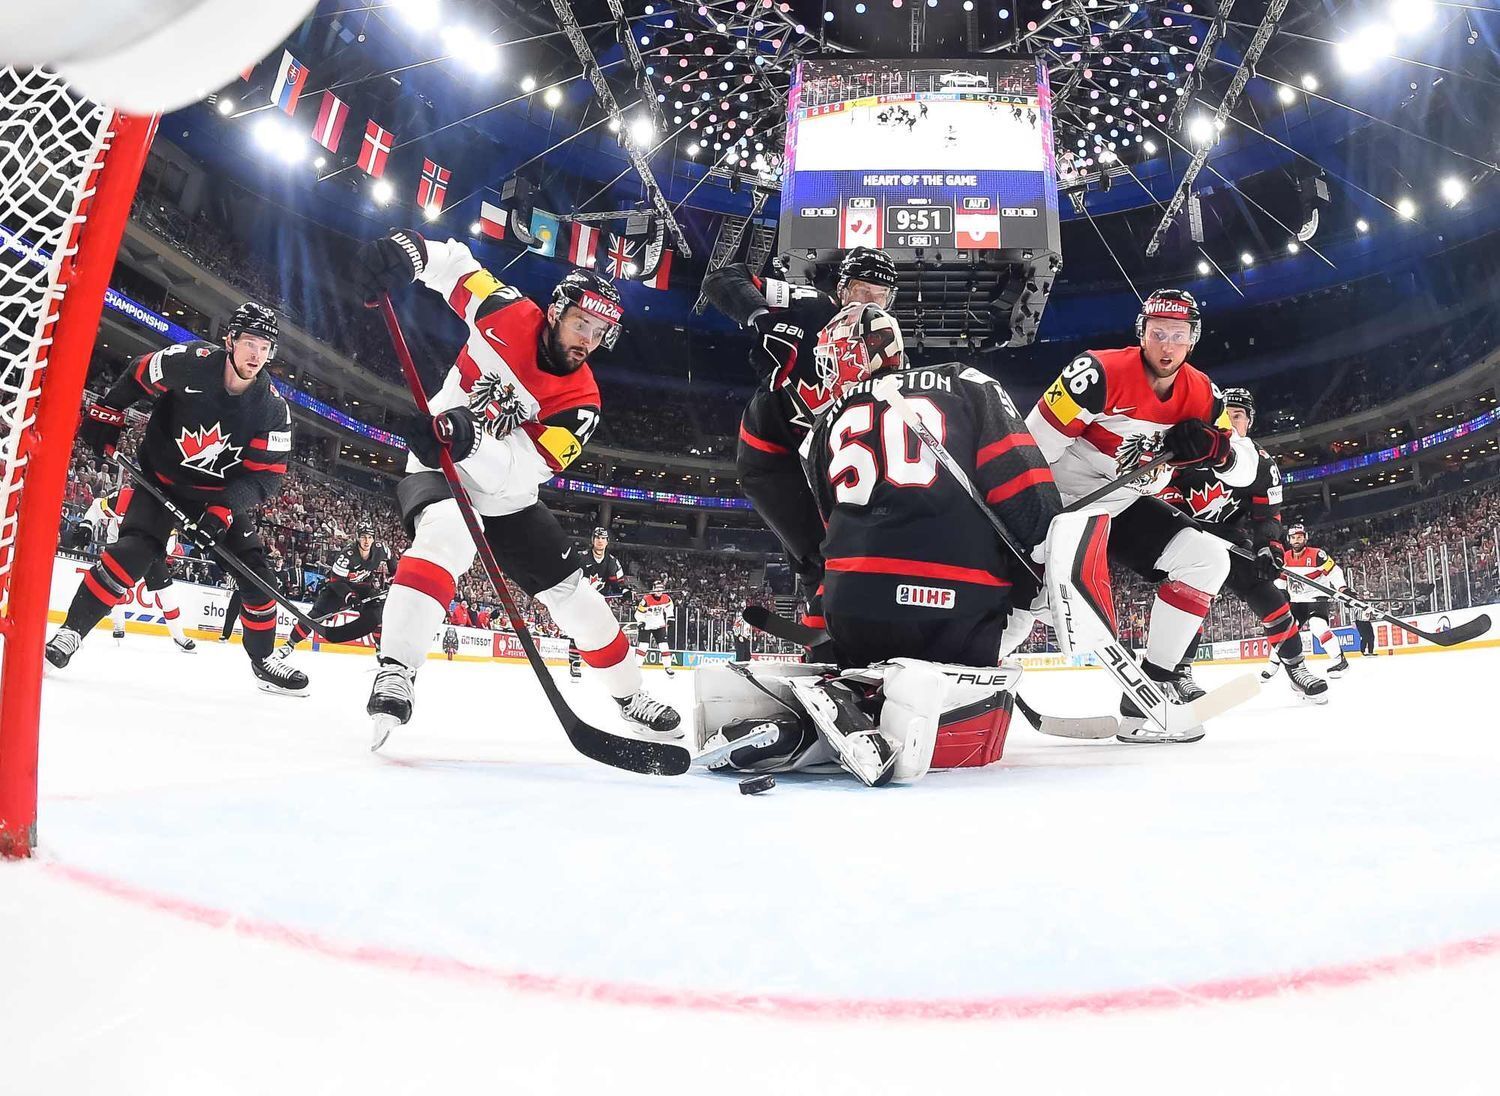 На ЧМ по хоккею Канада, выигрывая 6:1, упустила победу в основное время. Видео